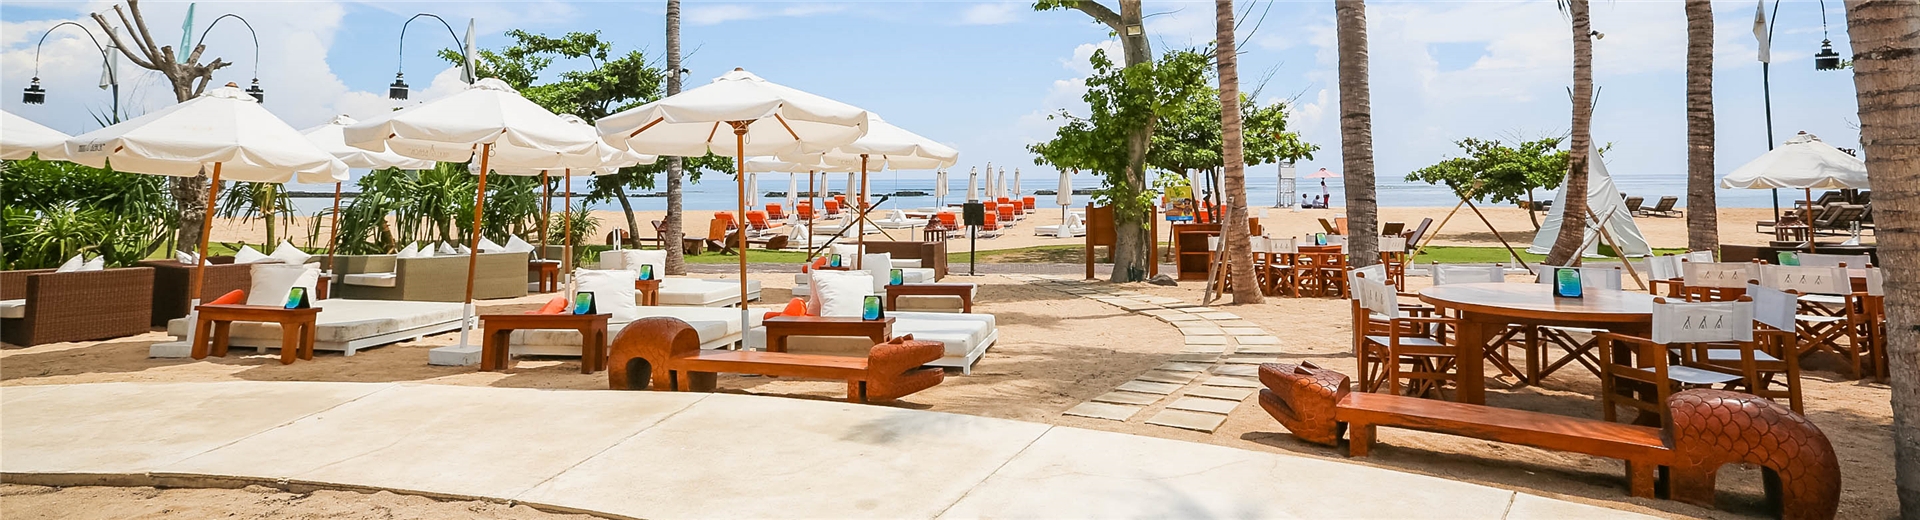 巴里島飯店推薦-五星級索菲特海灘渡假村